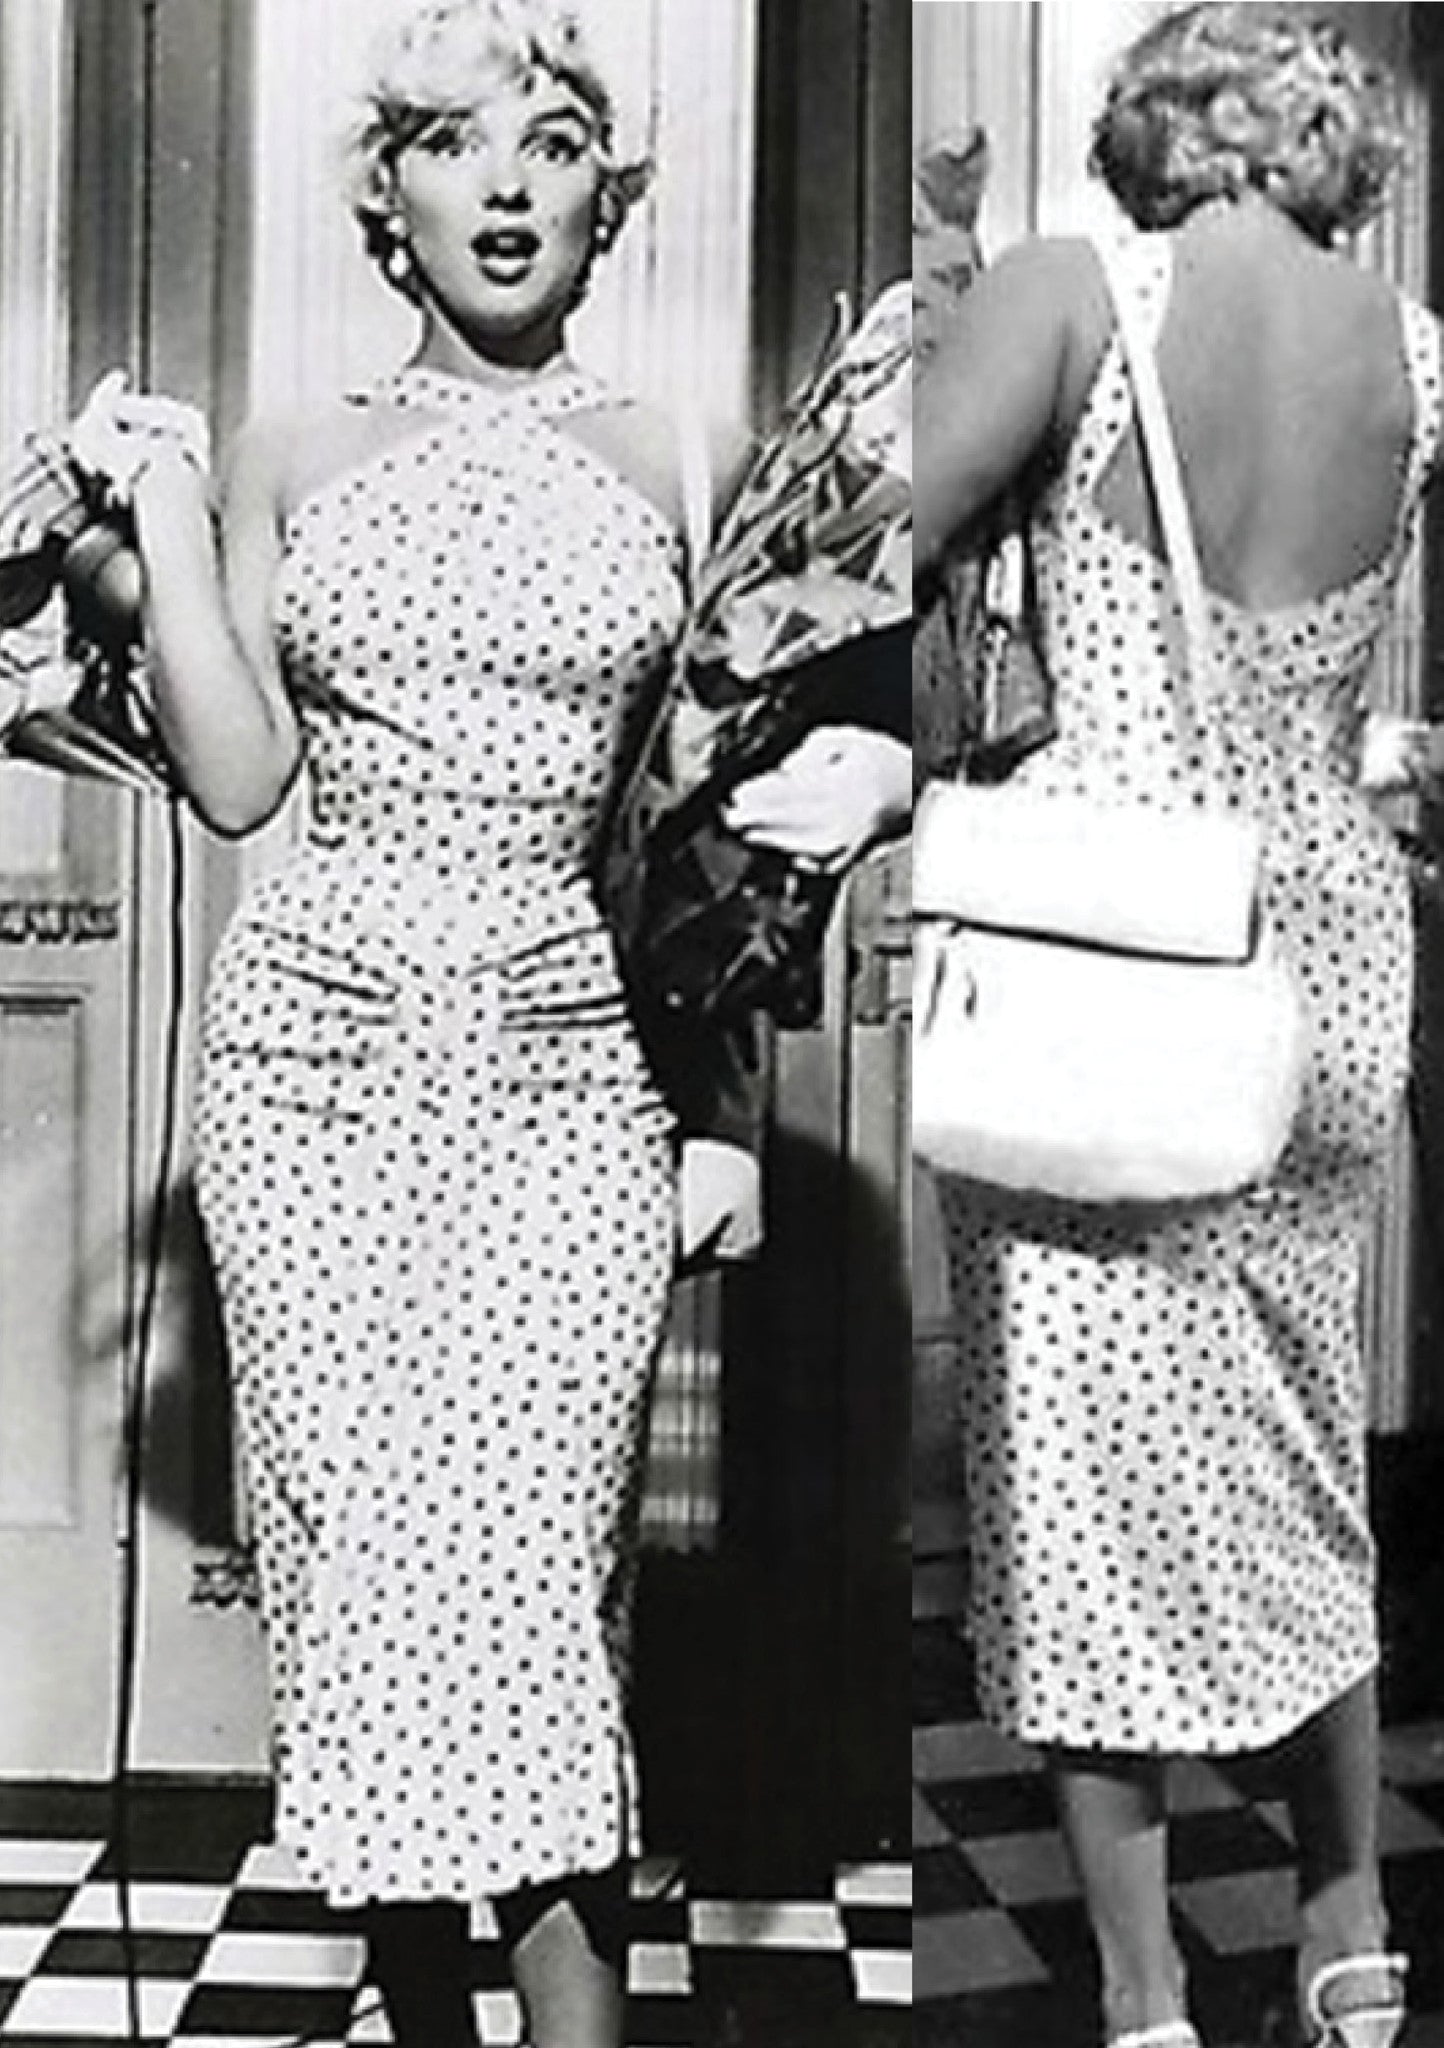 Recreation of Marilyn Monroe's White & Black Spot Day Dress - New ...